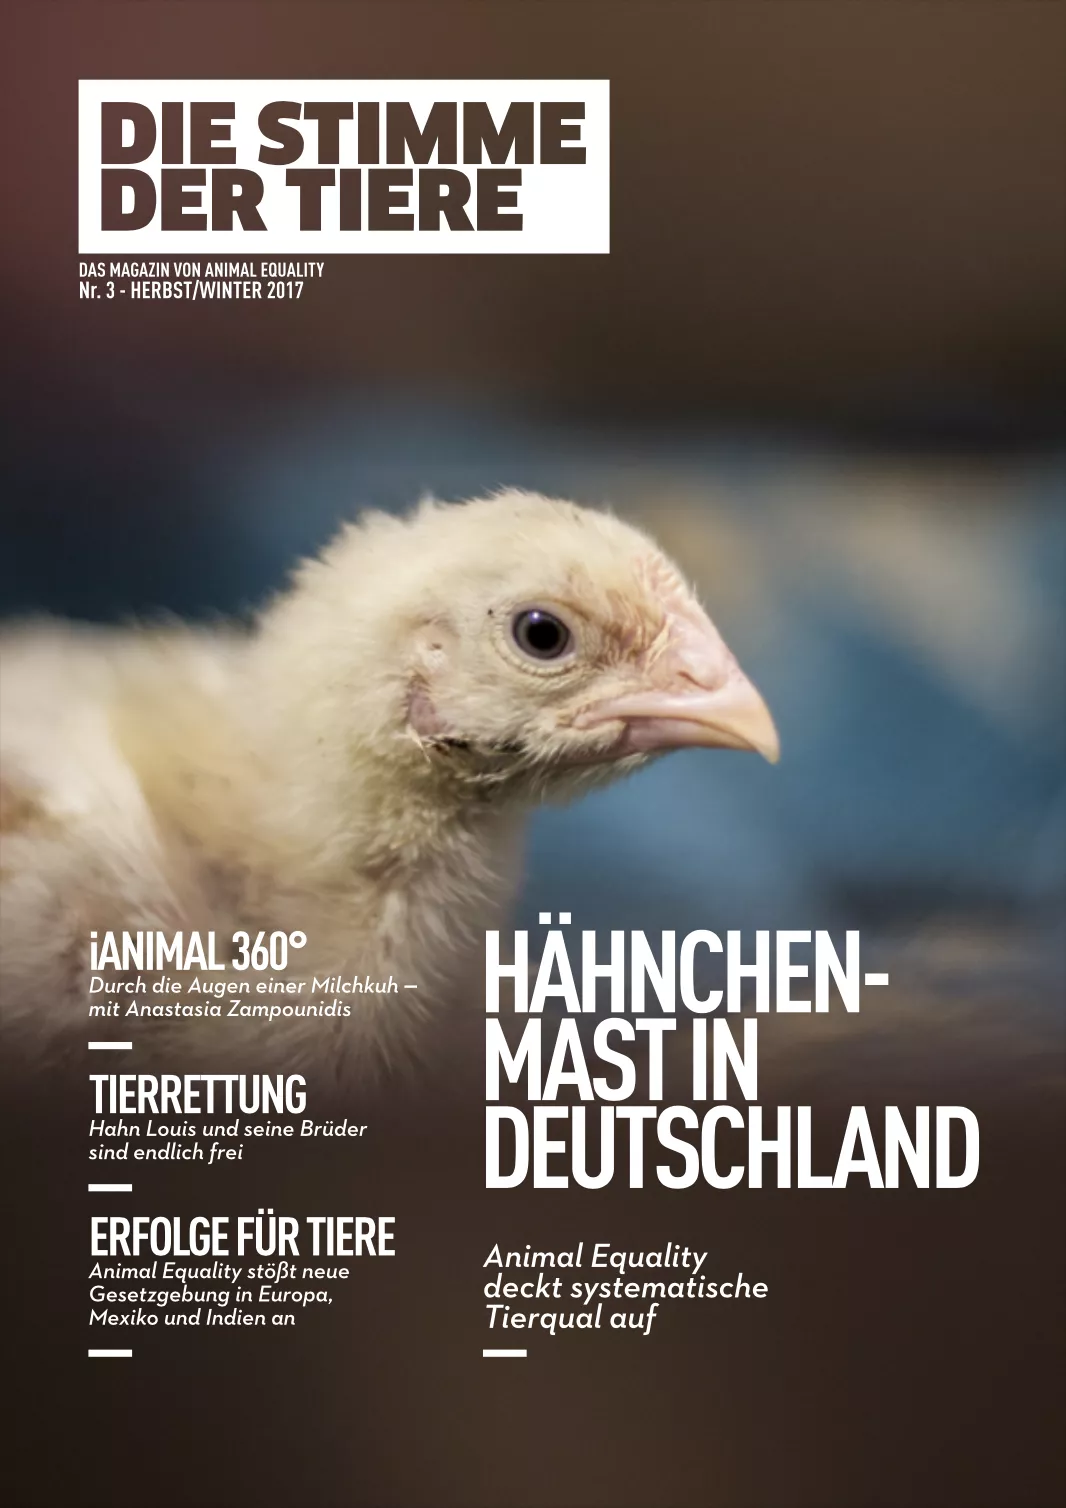 Die Stimme der Tiere - Das Magazin von Animal Equality Nr. 3 - 2017